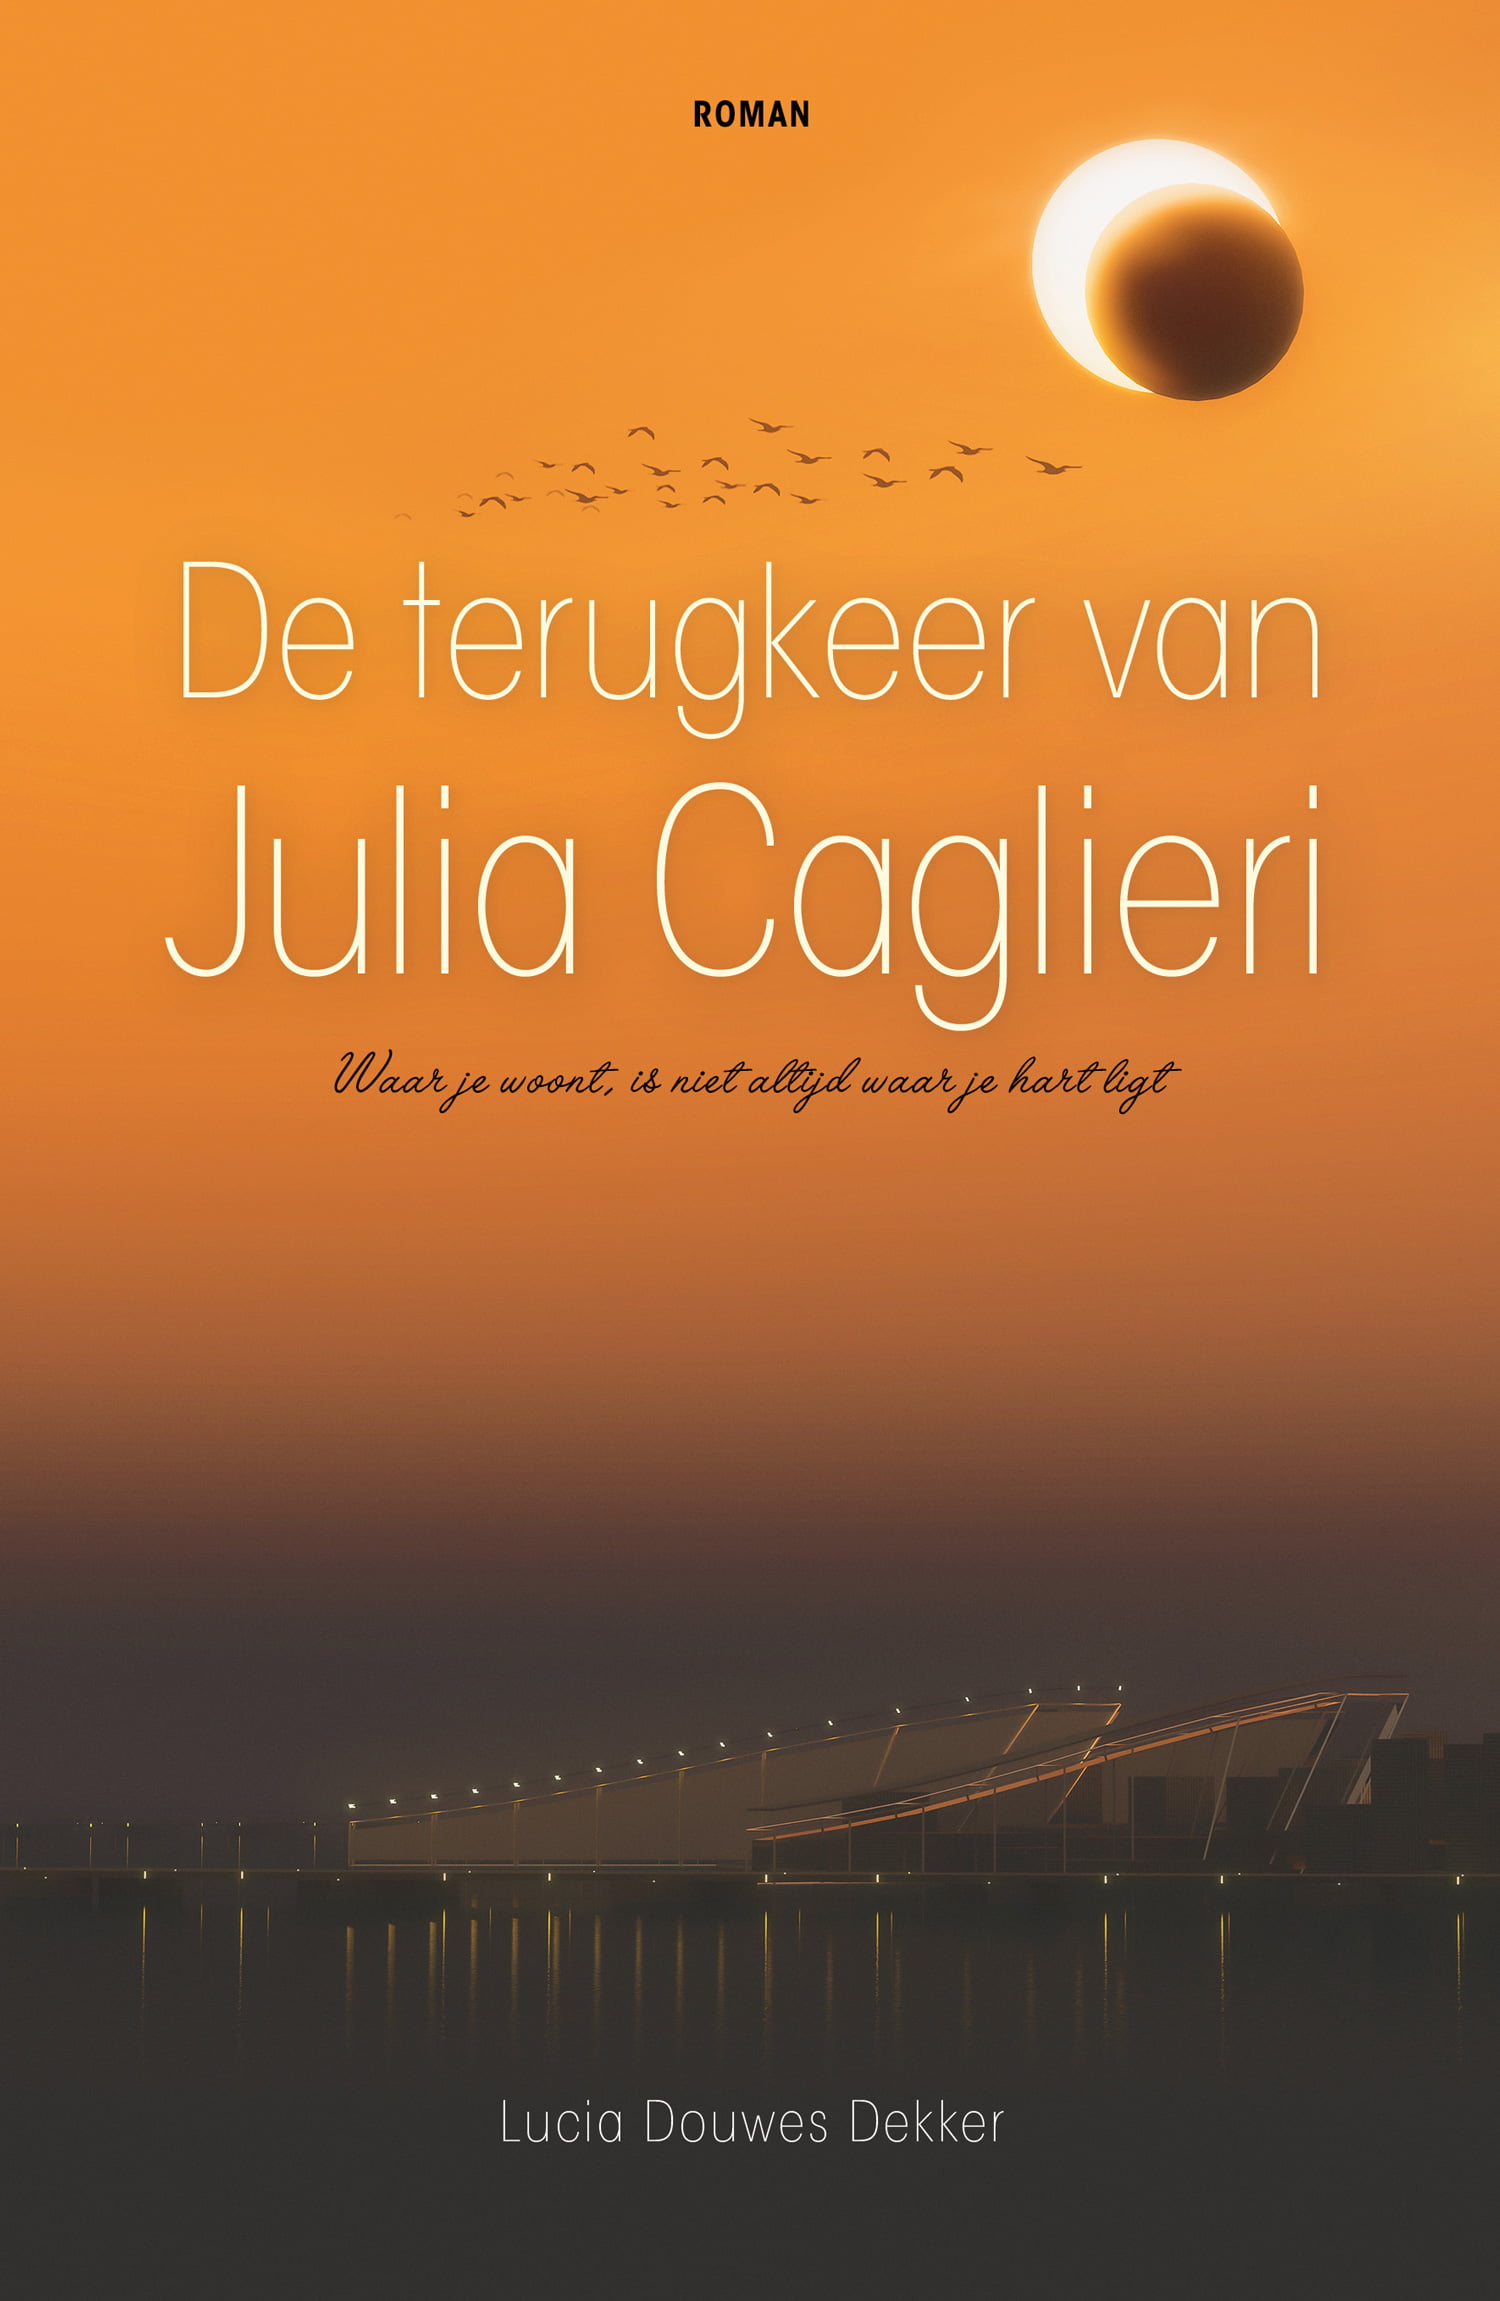 De roman ‘De terugkeer van Julia Caglieri’